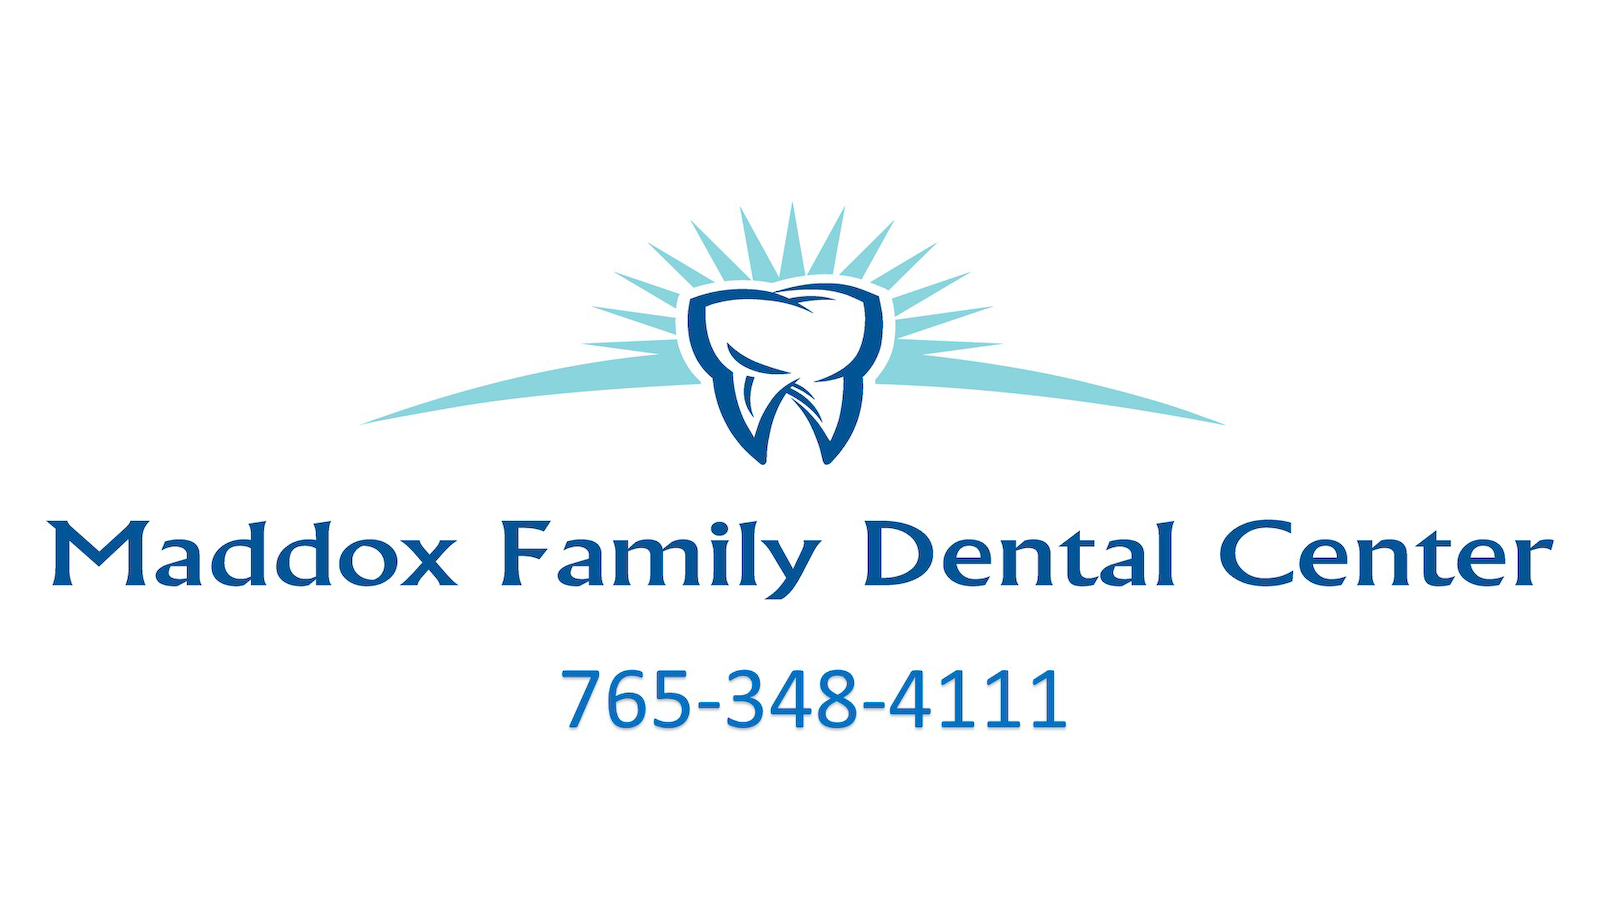 Maddox Family Dental Center